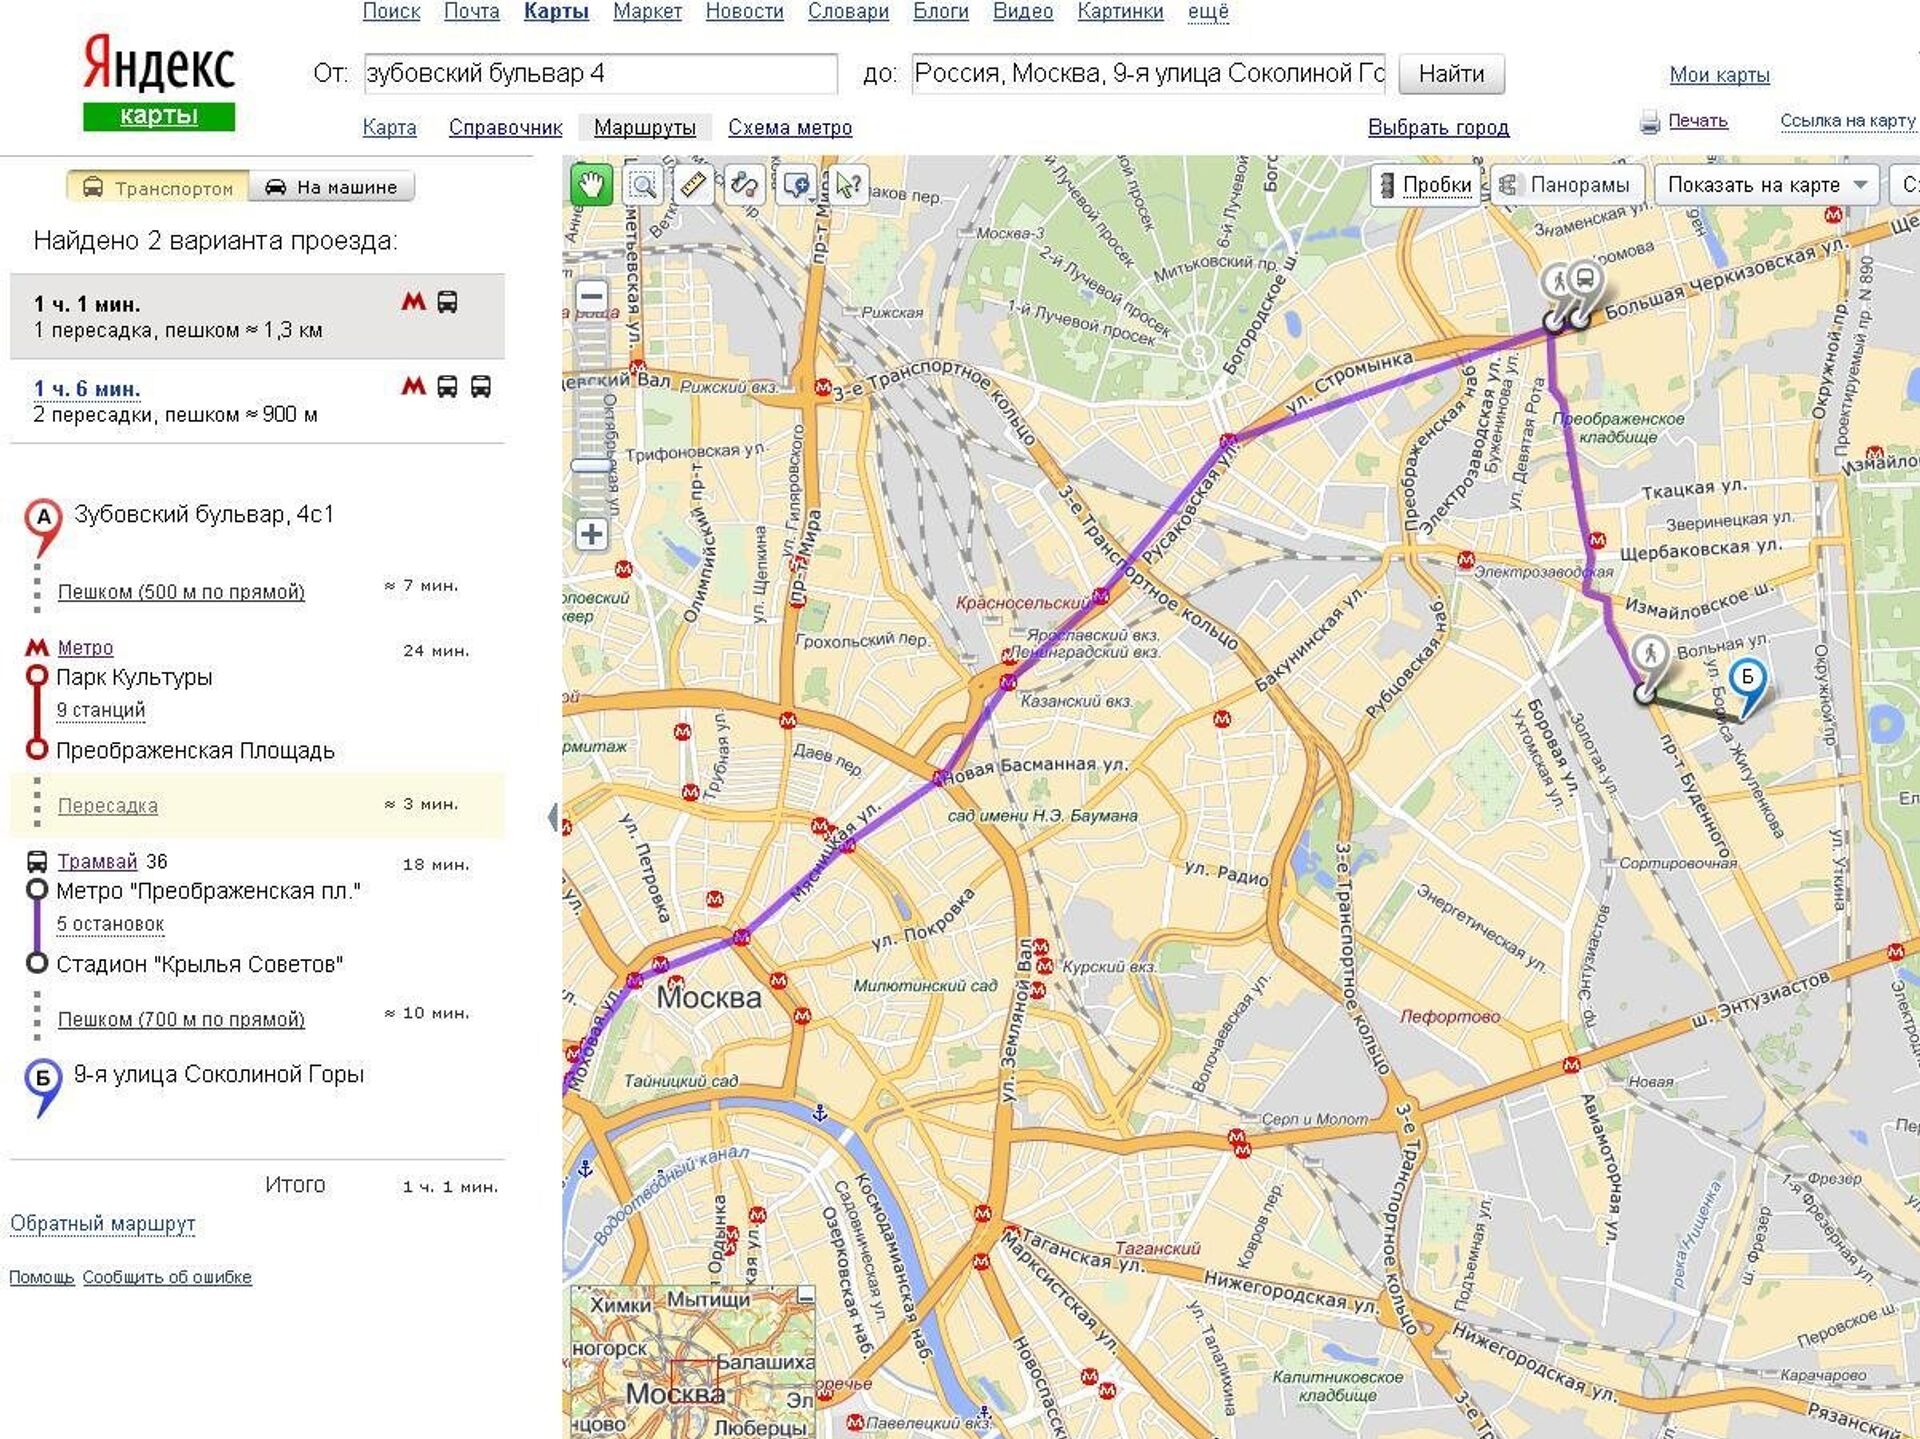 Построить маршрут общественным транспортом санкт петербург. Карта проложить маршрут общественным транспортом.